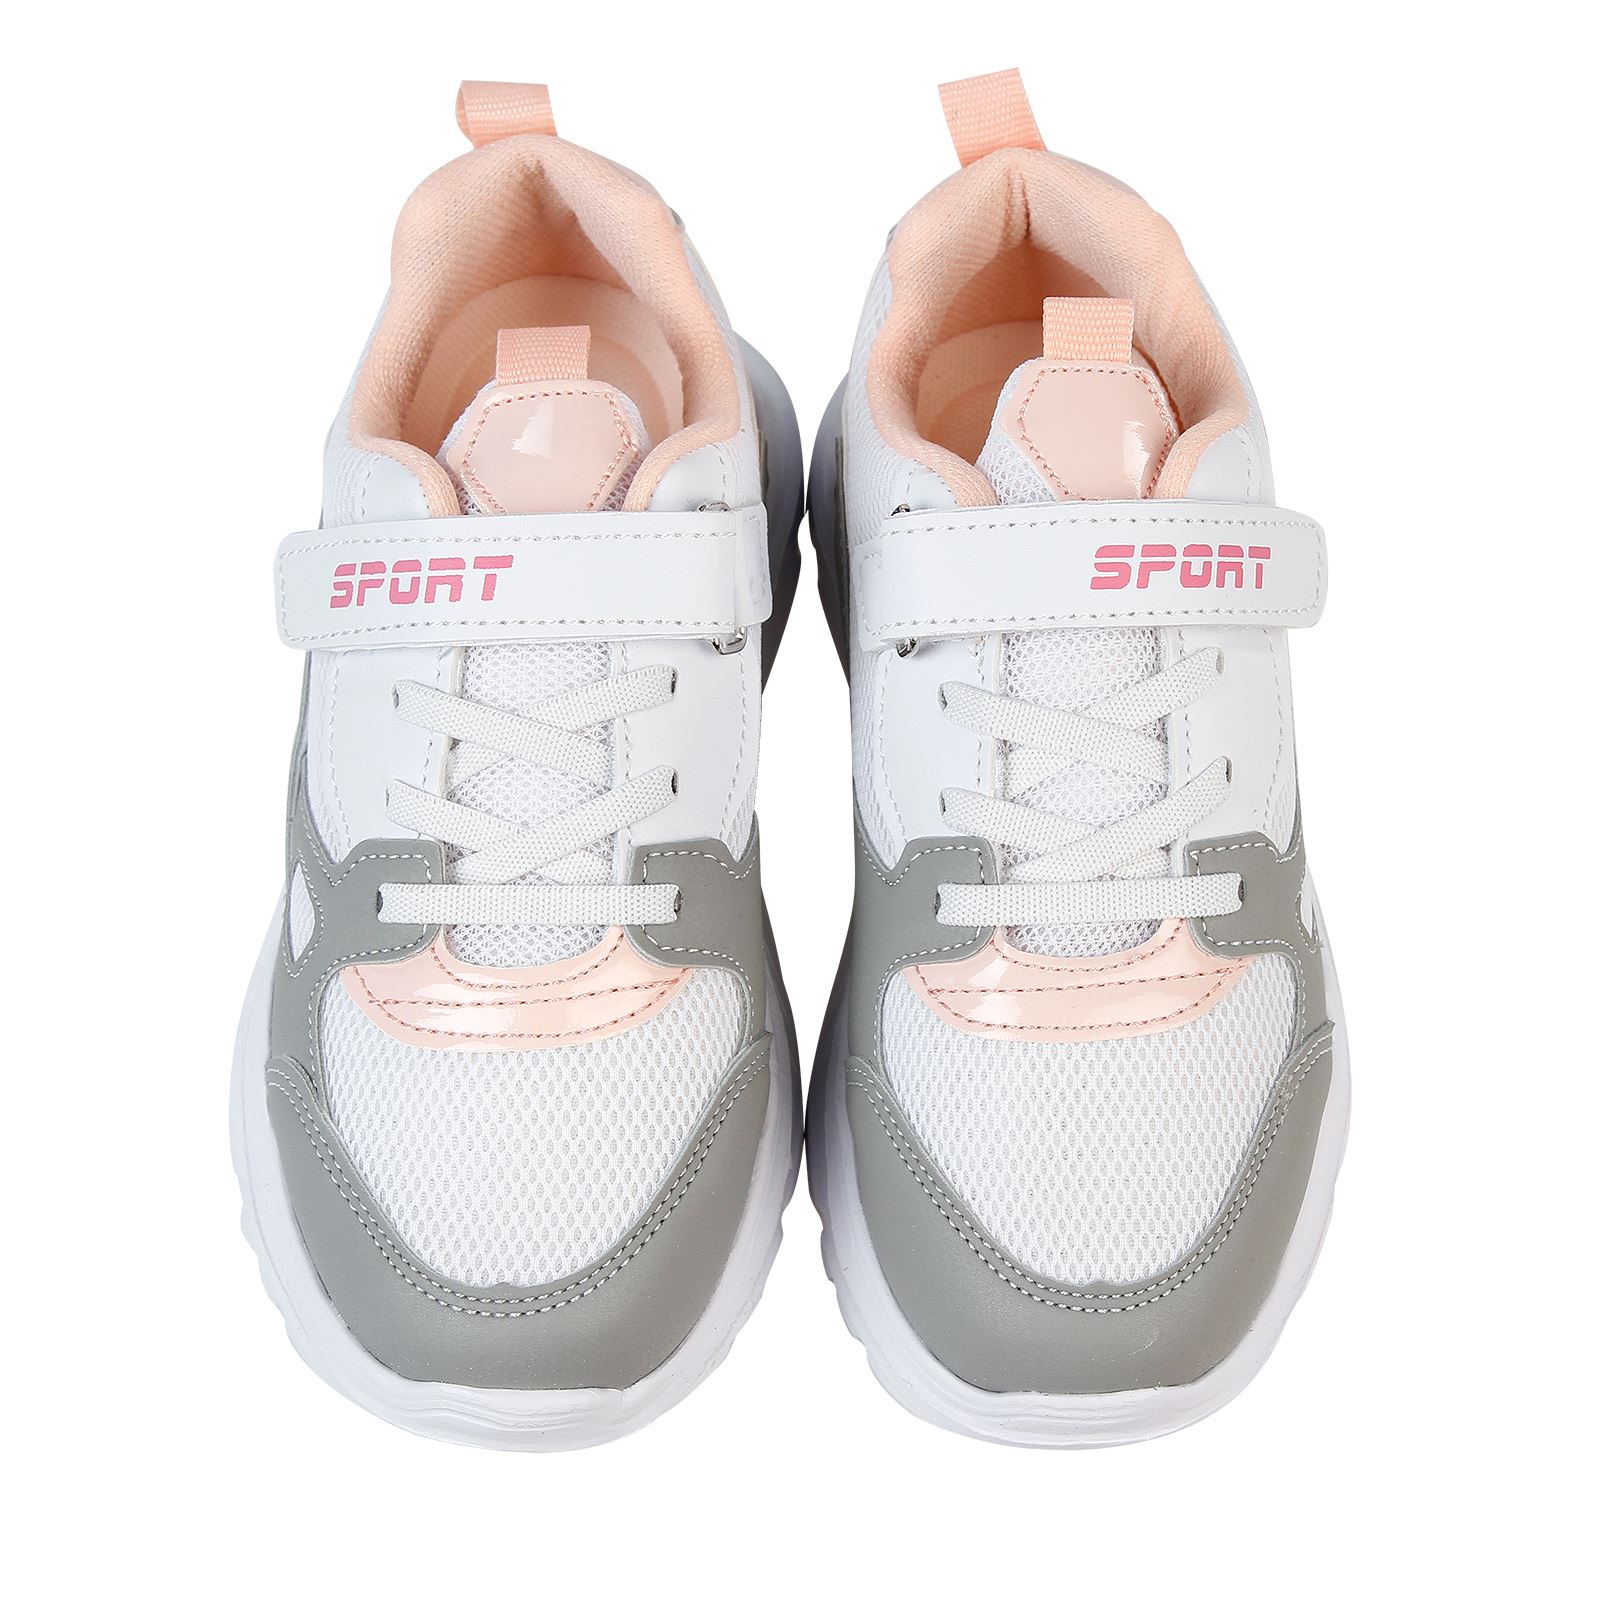 Sport Kız Çocuk Spor Ayakkabısı 31-35 Numara Beyaz-Pembe